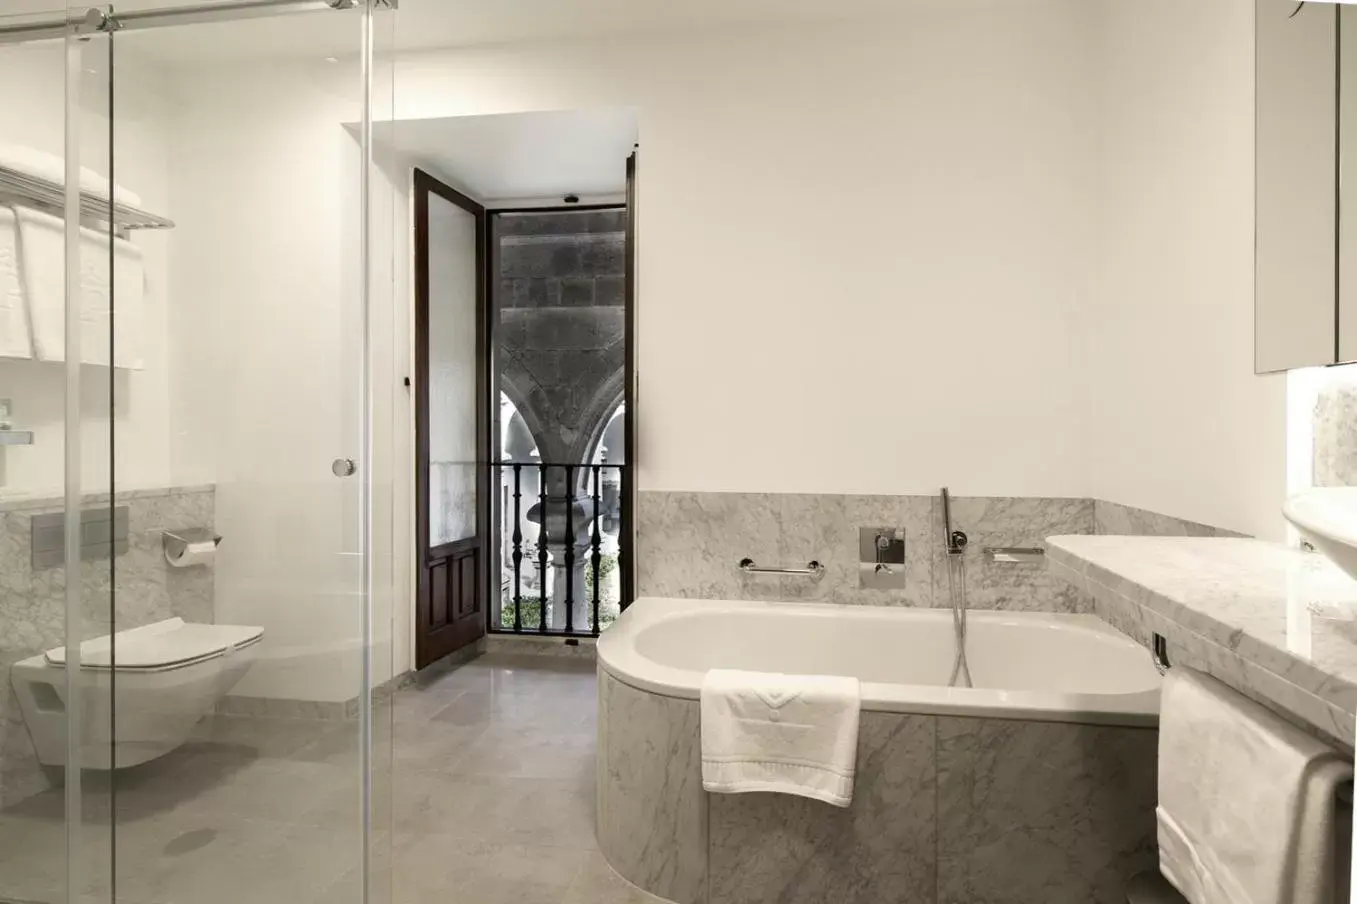 Photo of the whole room, Bathroom in Parador de Santiago - Hostal Reis Catolicos